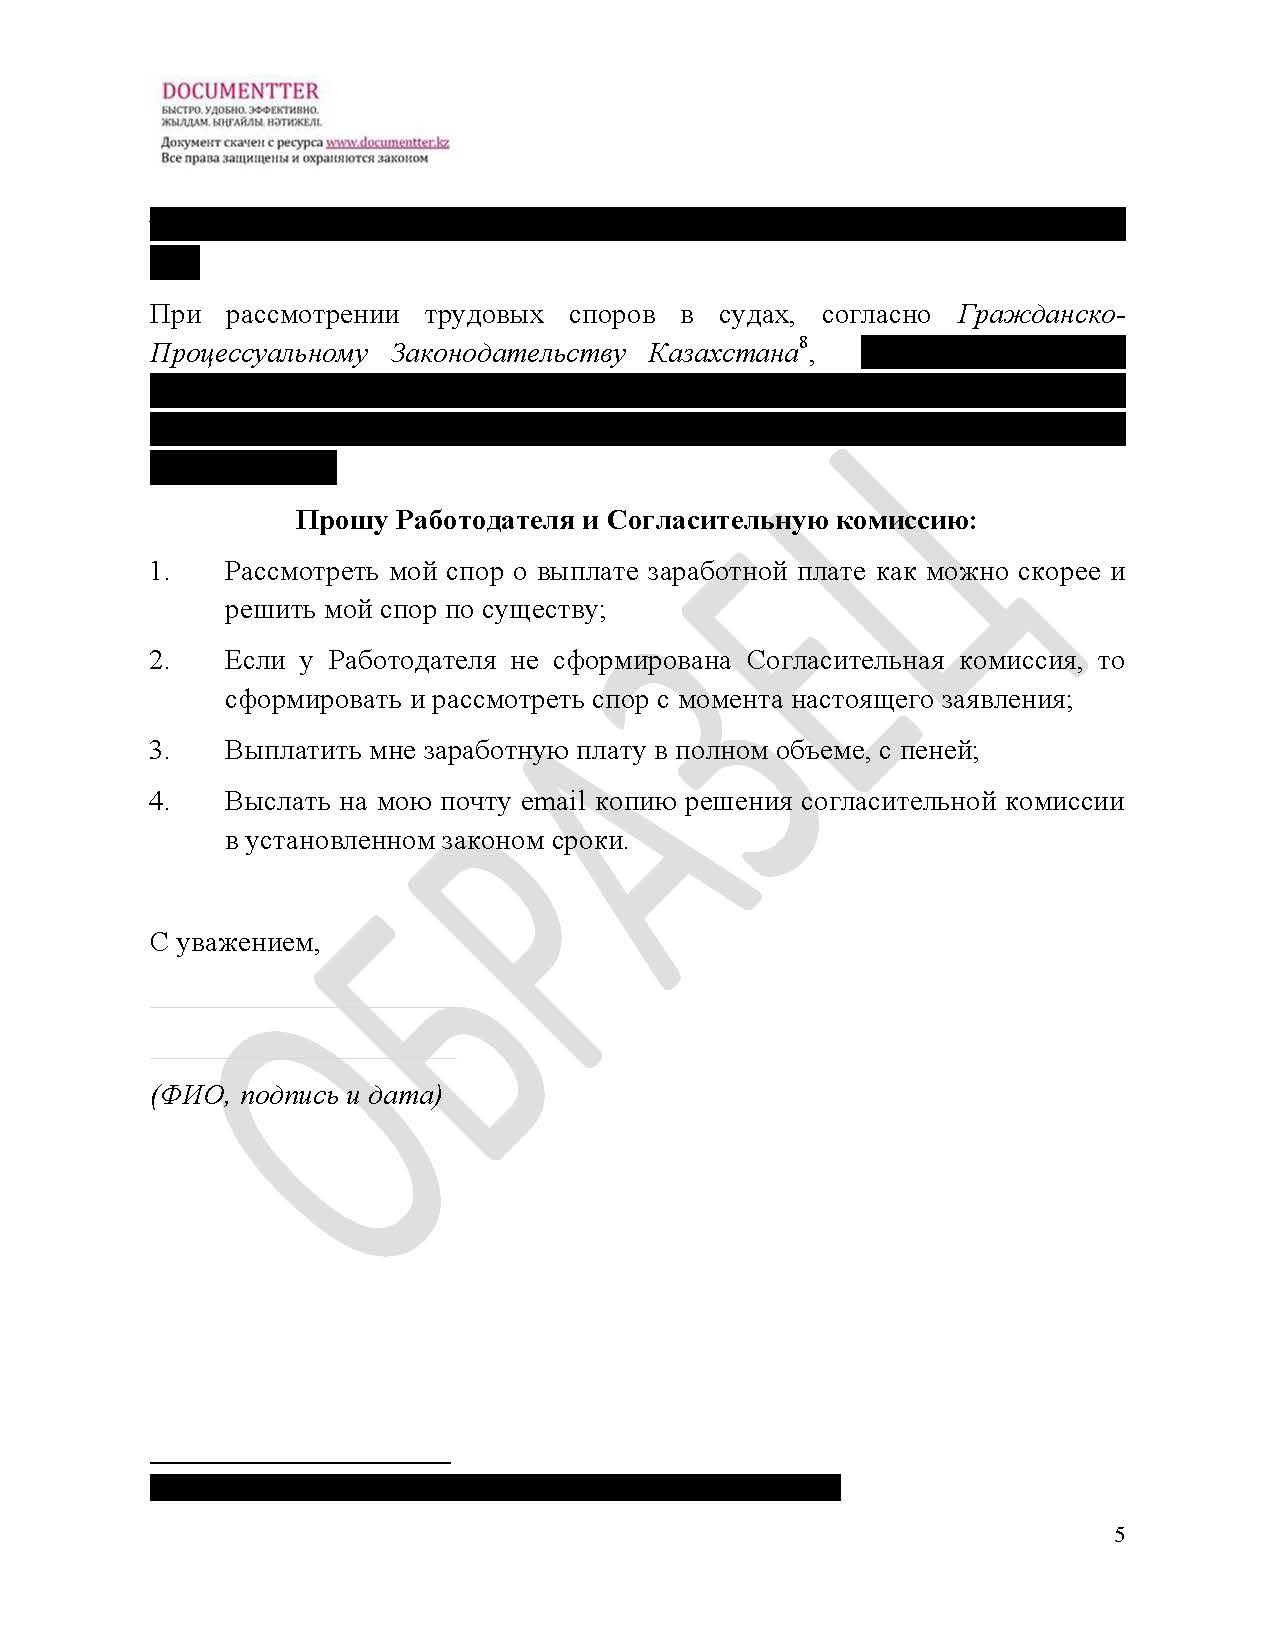 Заявление в согласительную комиссию, если не выплатили зарплату | documentterkz.com в Казахстане